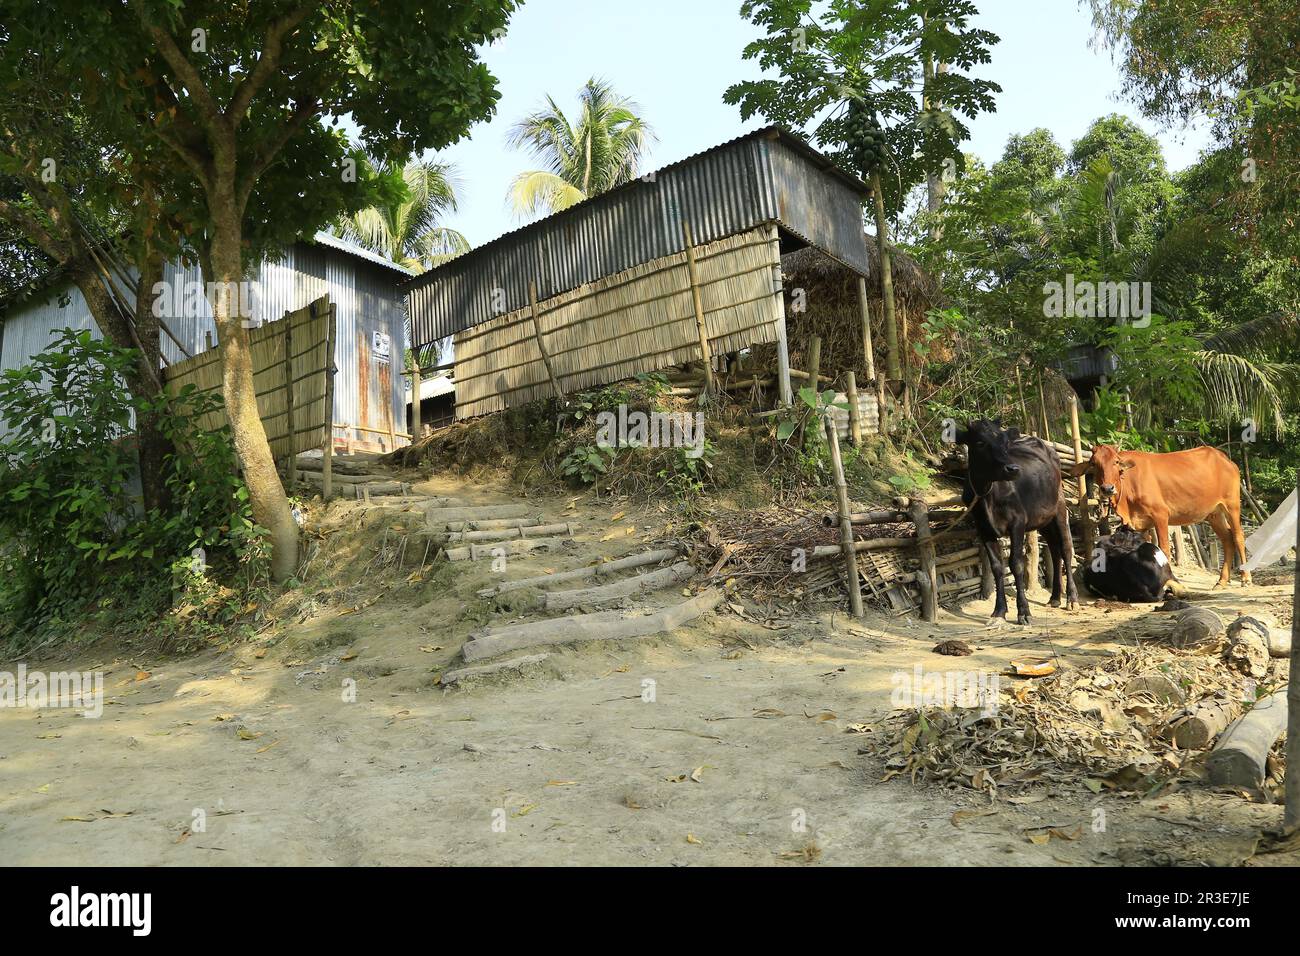 Natürliche Lage Dorfhaus Bild in Bangladesch das Haus ist Bambus und natürliche Elemente und grüne Umgebung Stockfoto